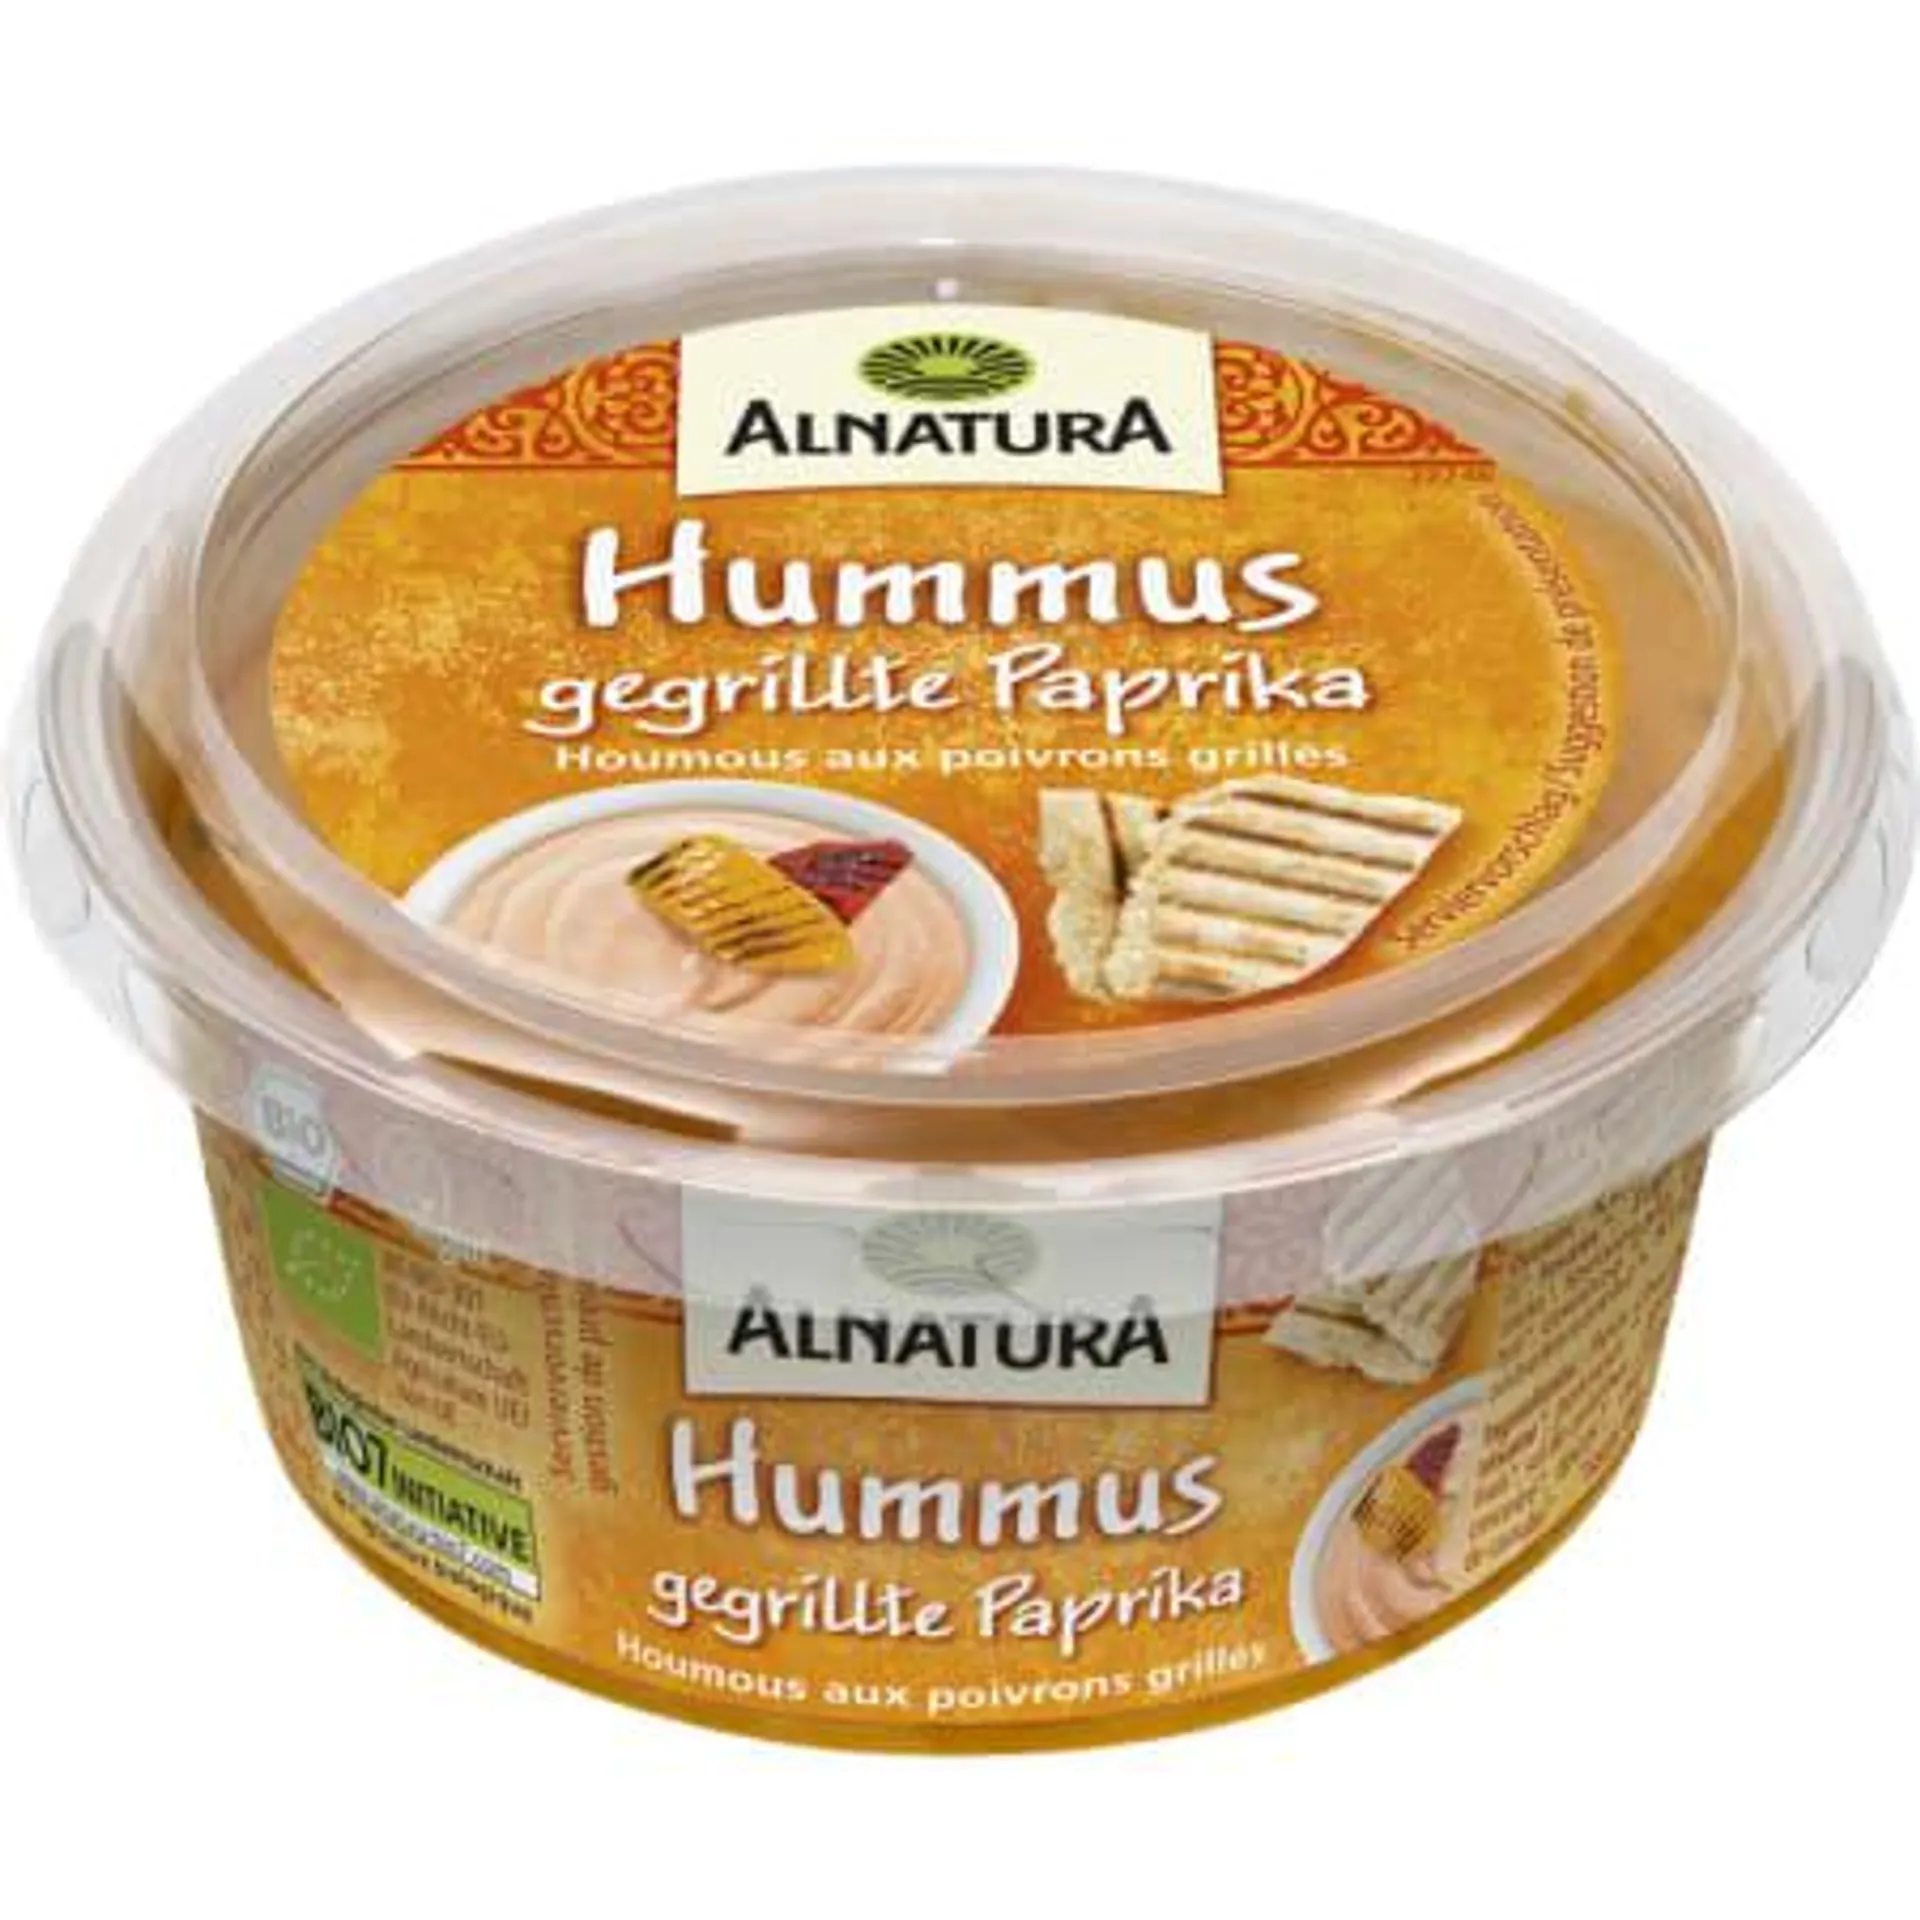 Bio Hummus gegrillte Paprika